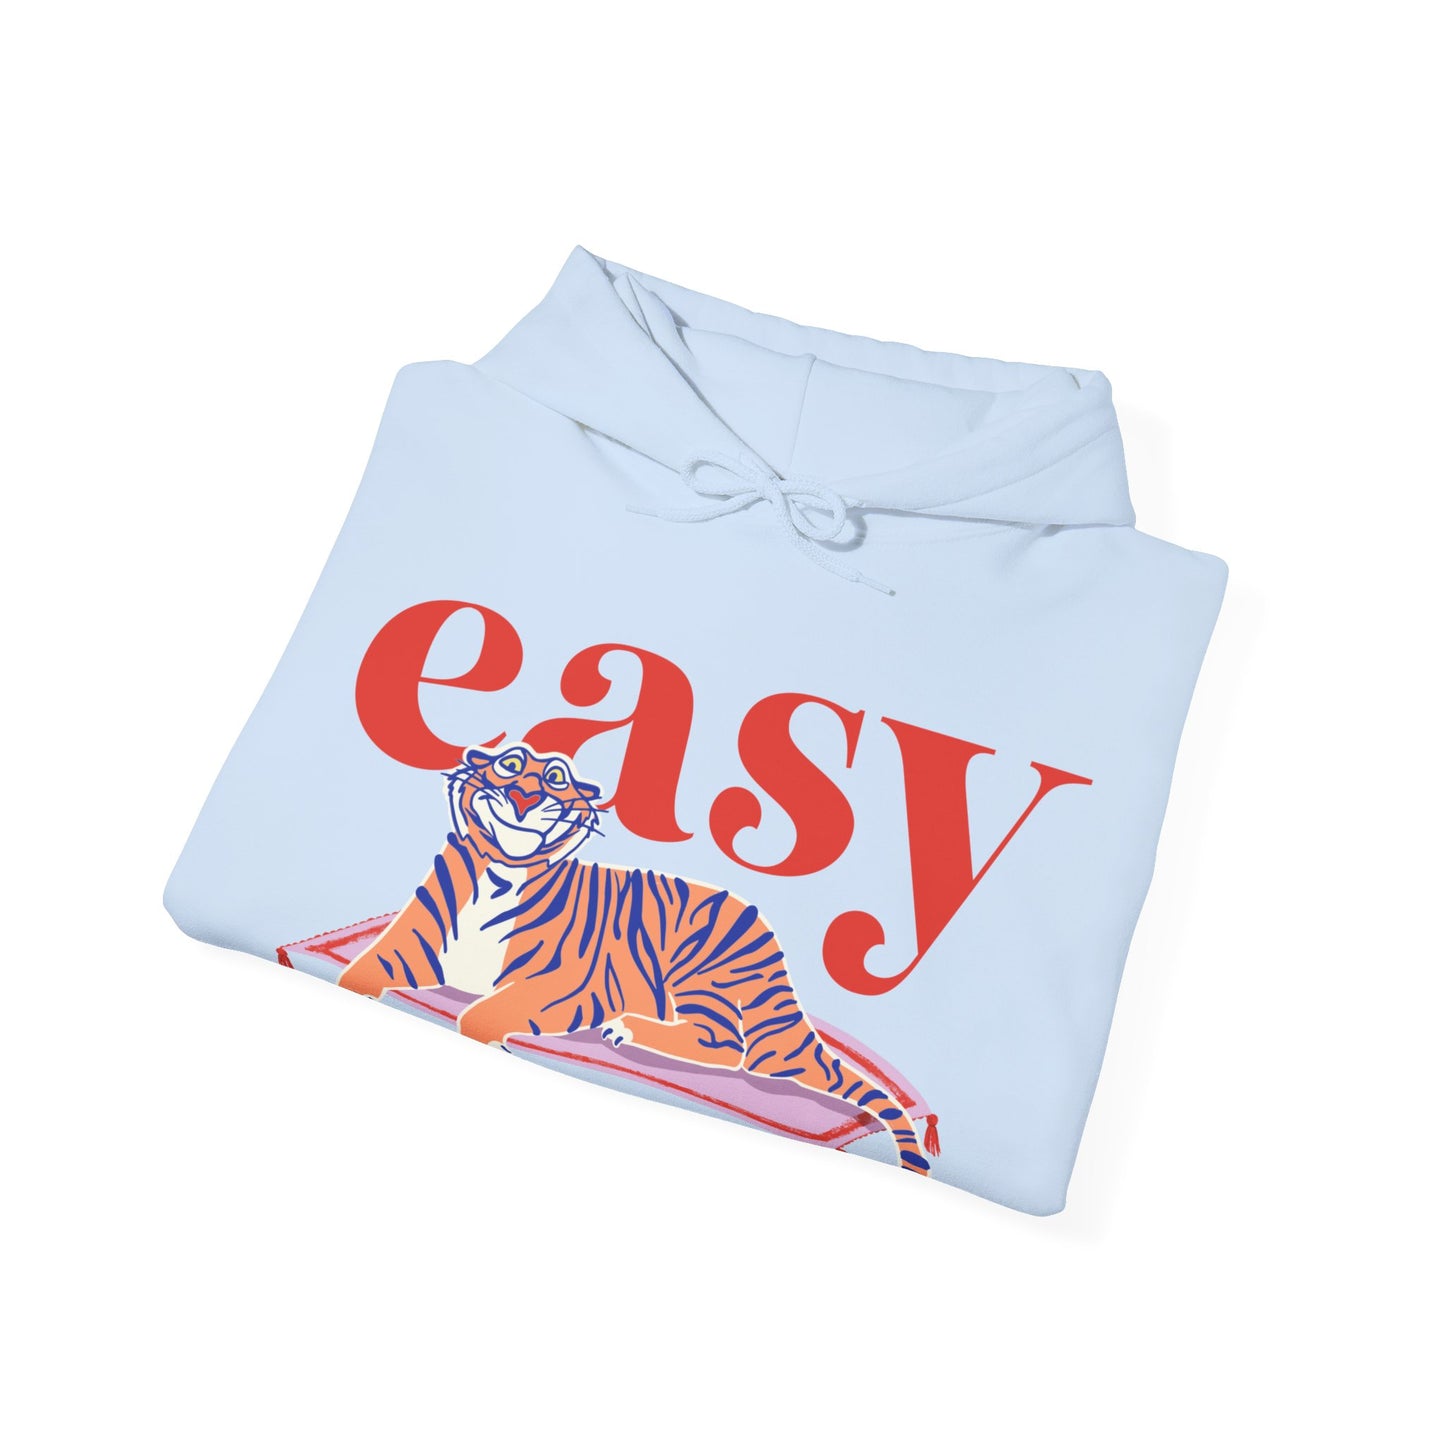 Easy Tiger - Rajah - Adult Hoodie Sweatshirt